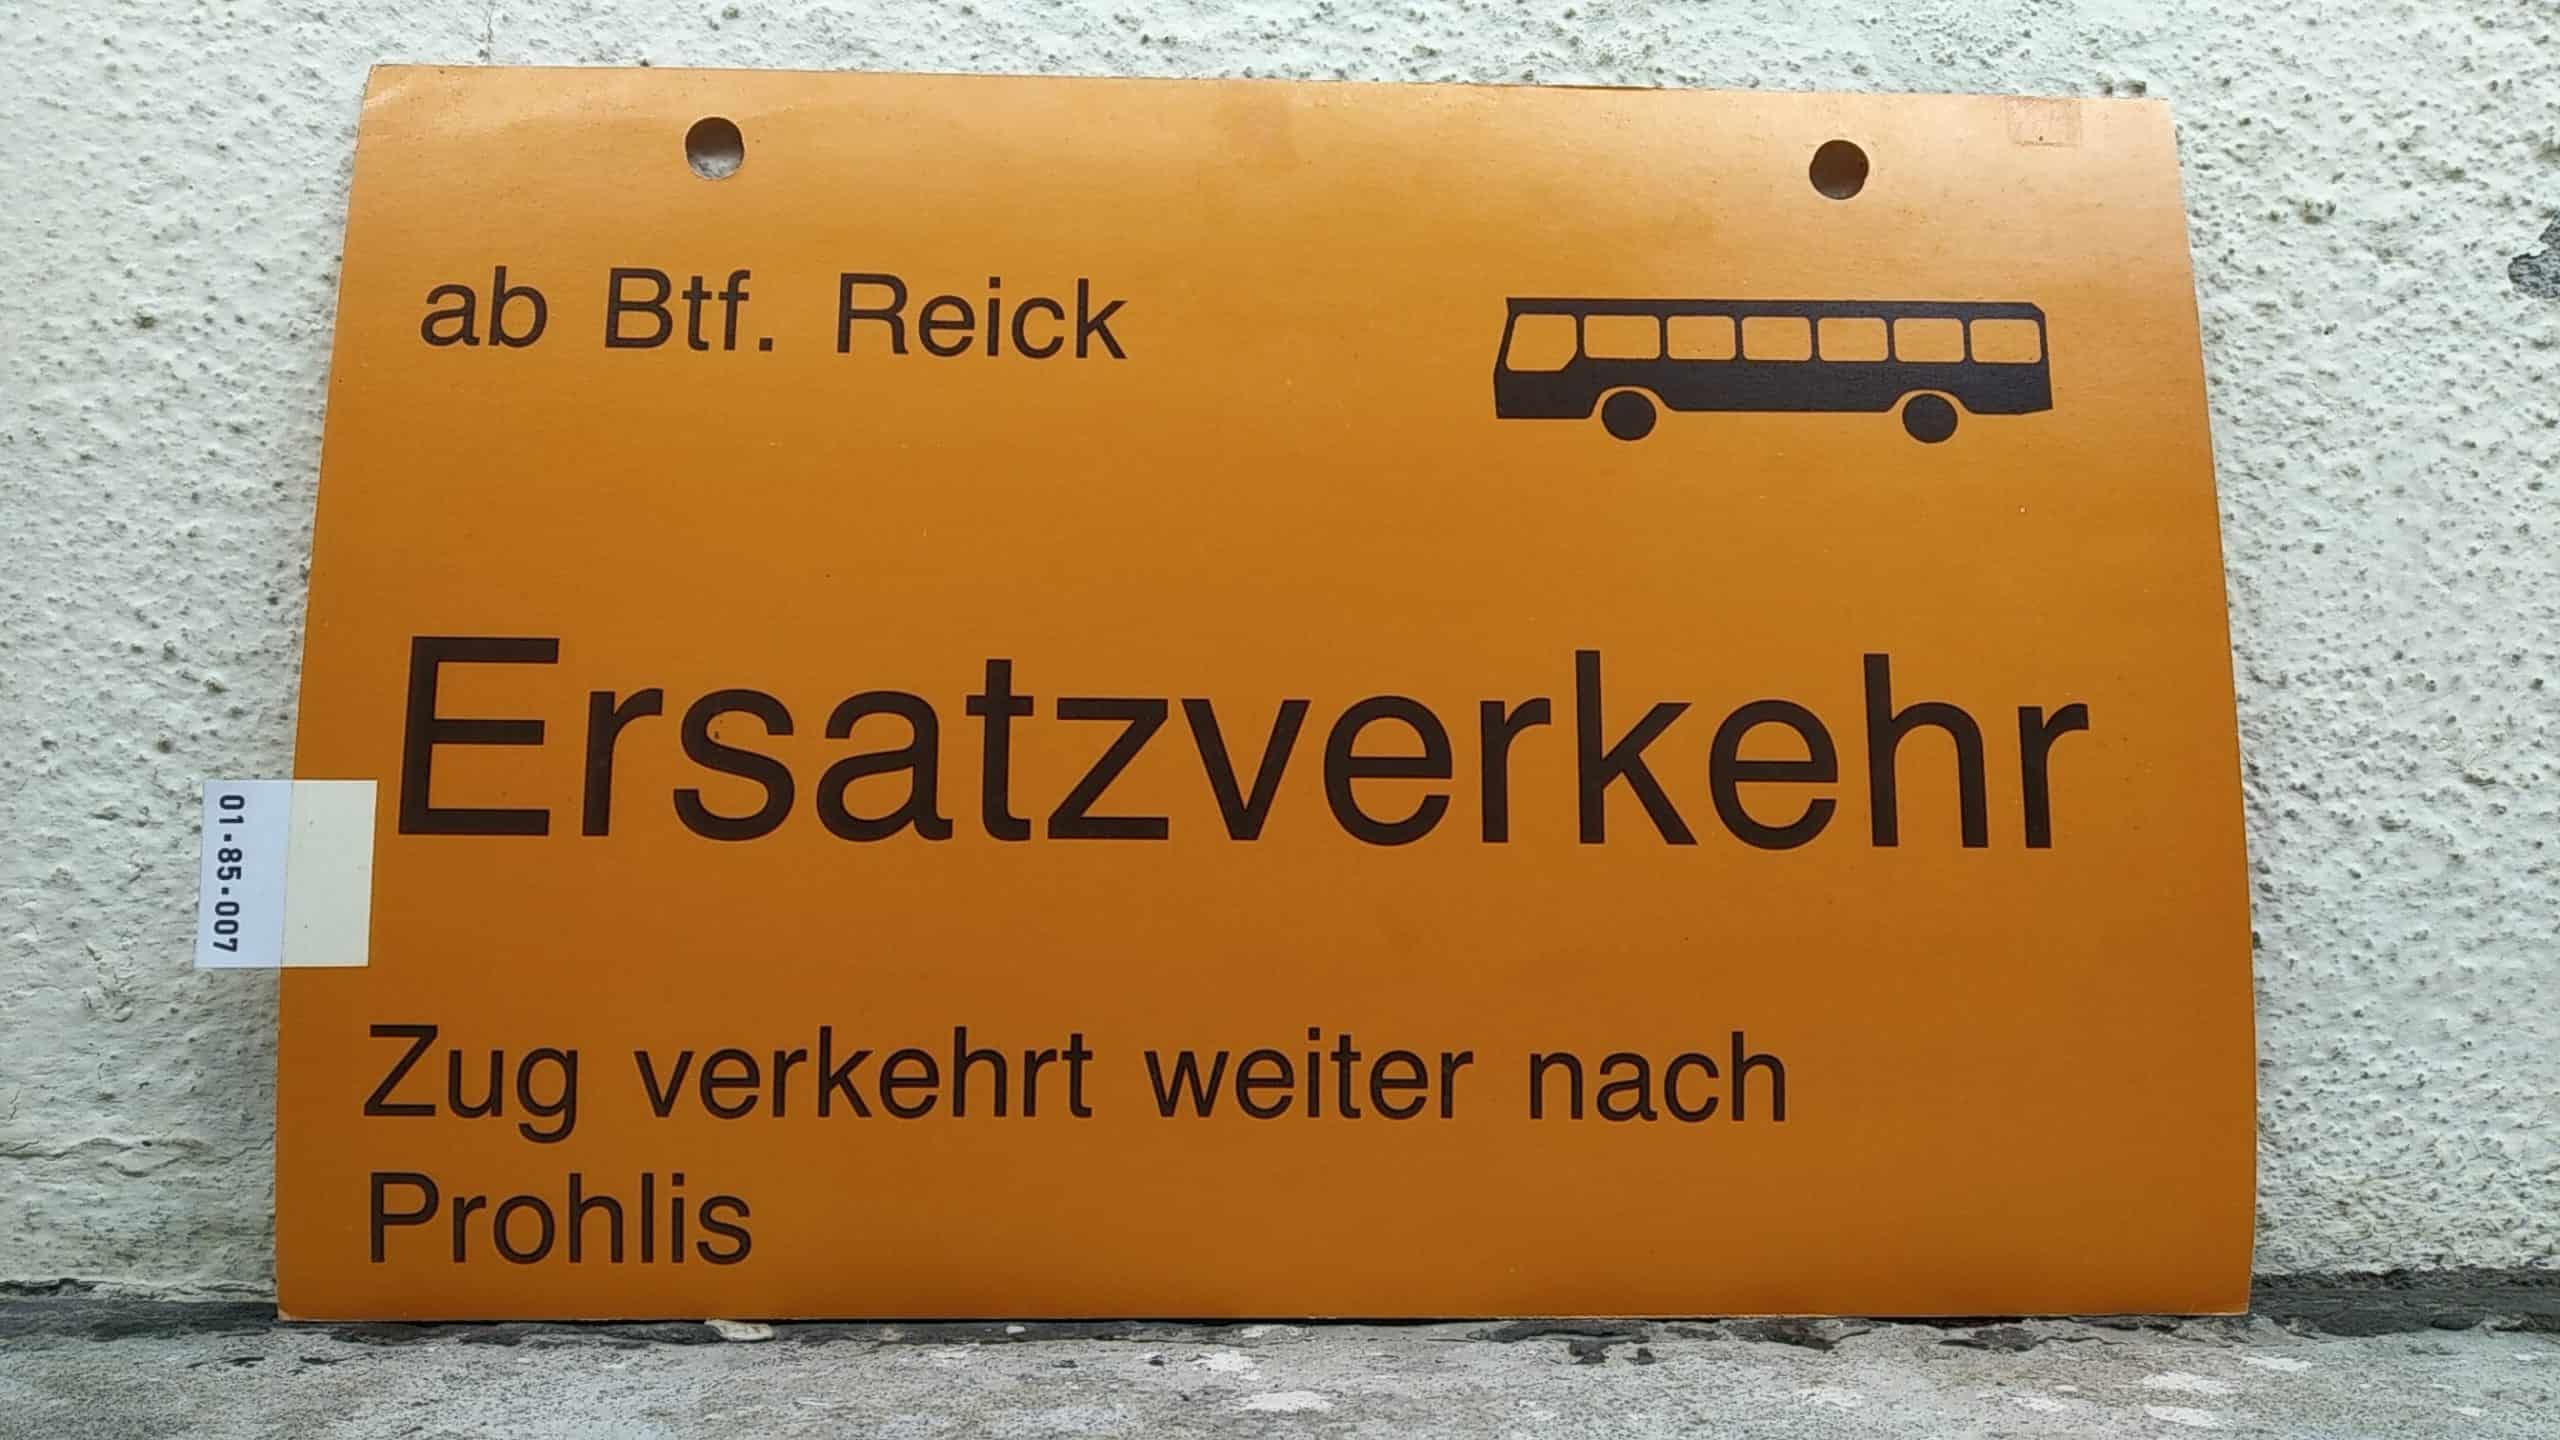 Ein seltenes Straßenbahn-Umleitungsschild aus Dresden: ab Btf. Reick [Bus neu] Ersatzverkehr Zug verkehrt weiter nach Prohlis